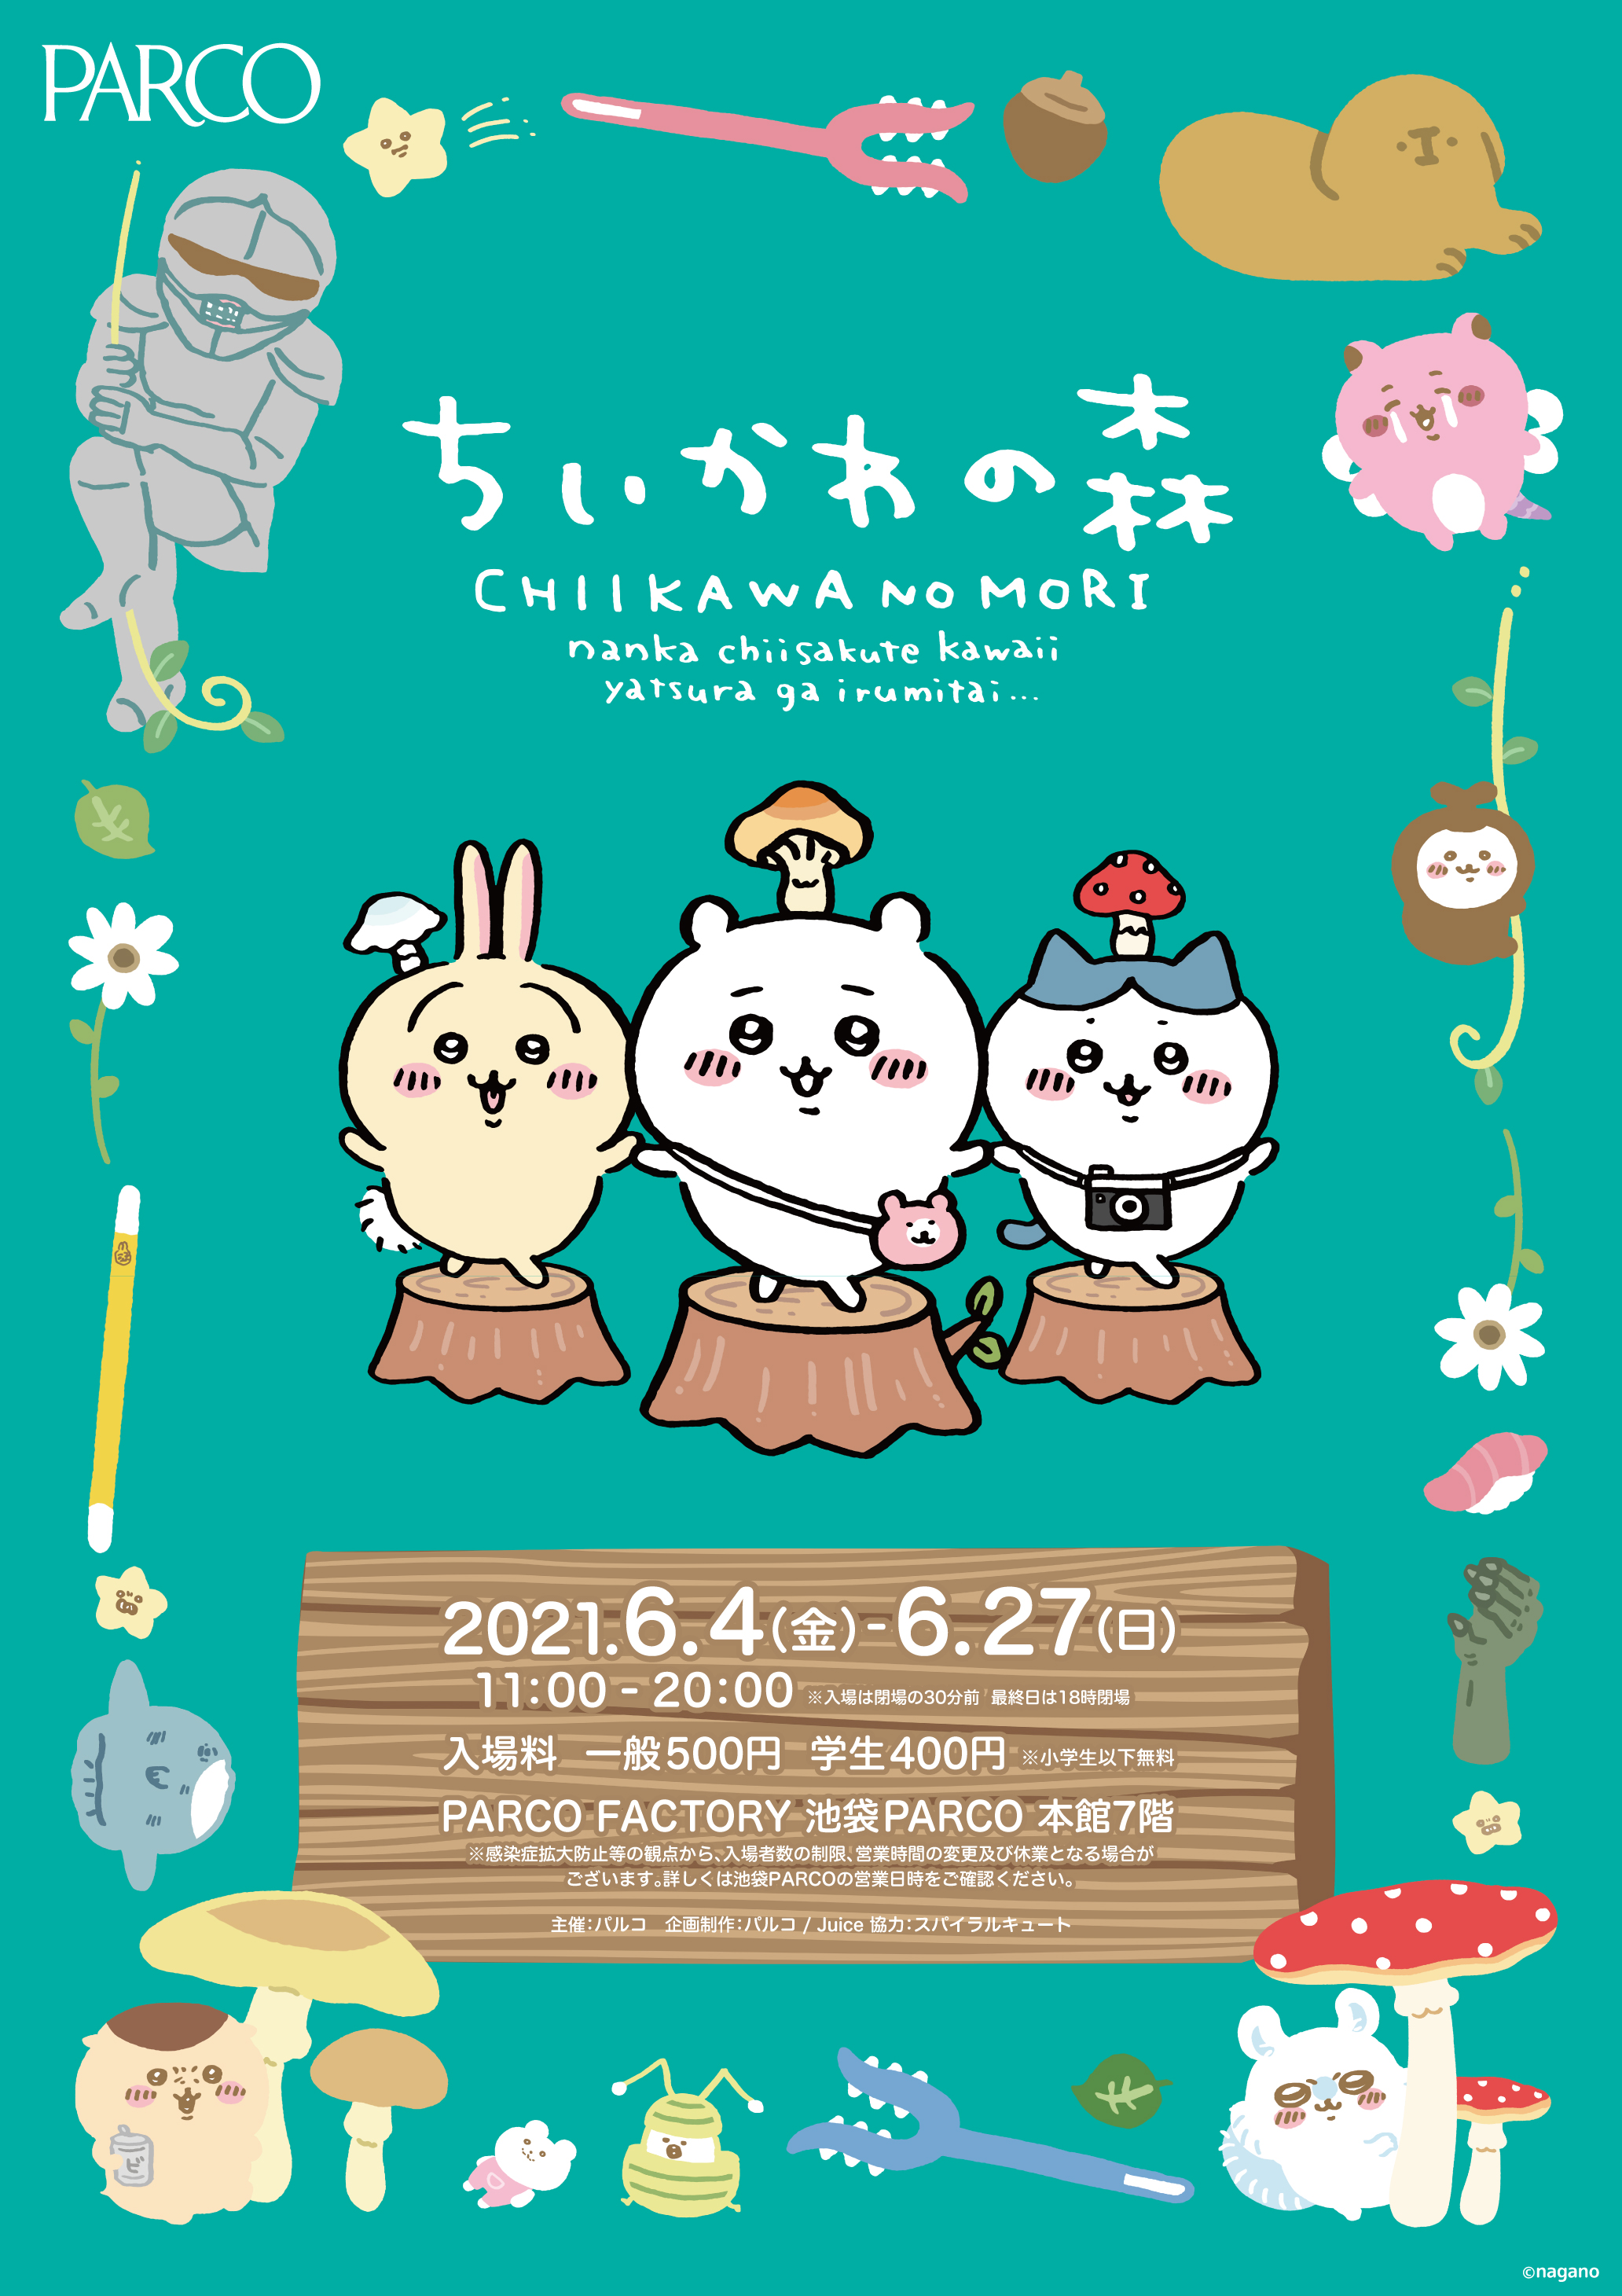 広島parco 大人気キャラクター ちいかわ 初の大型展覧会 ちいかわの森 を9月10日から開催 株式会社パルコのプレスリリース